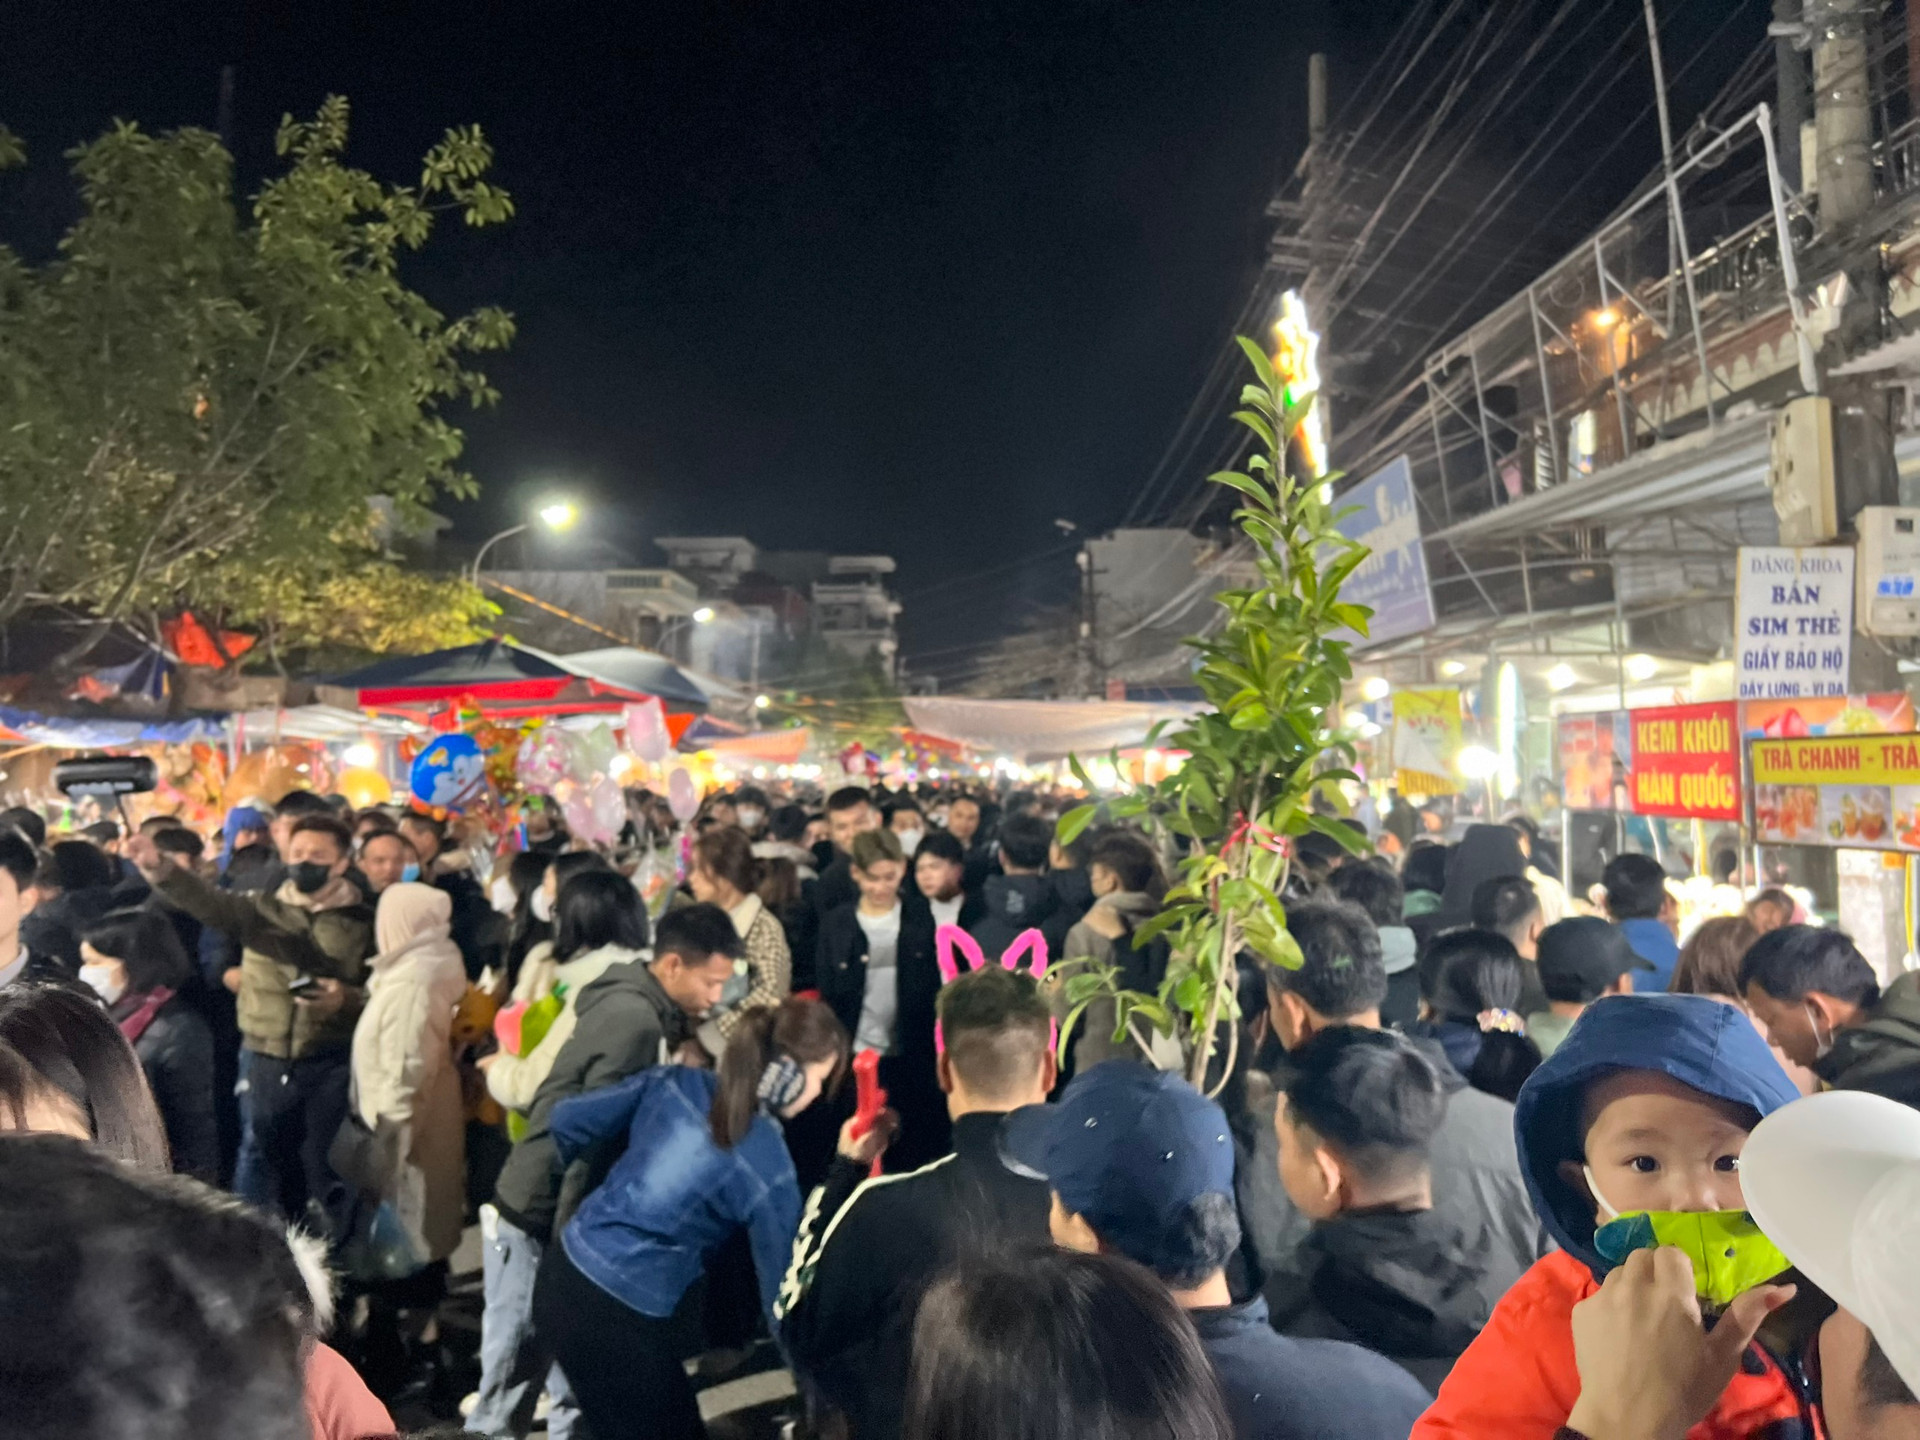 Phiên chợ cả năm chỉ họp một lần, đông nhất vào nửa đêm và rạng sáng, cách Hà Nội chưa tới 100km- Ảnh 9.